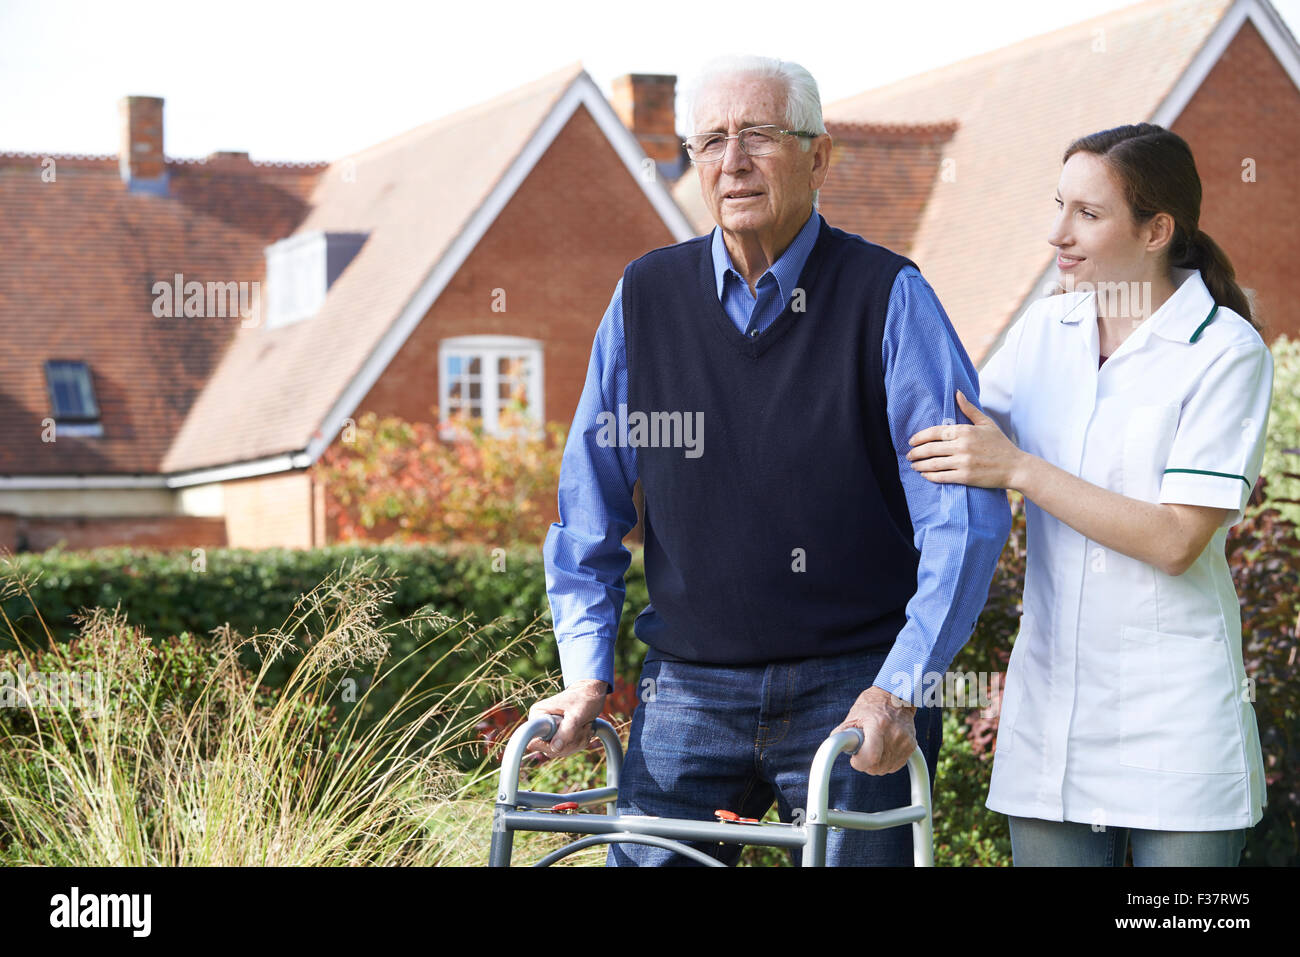 Carer Helping Senior Man To Walk In Garden Using Walking Frame Stock Photo